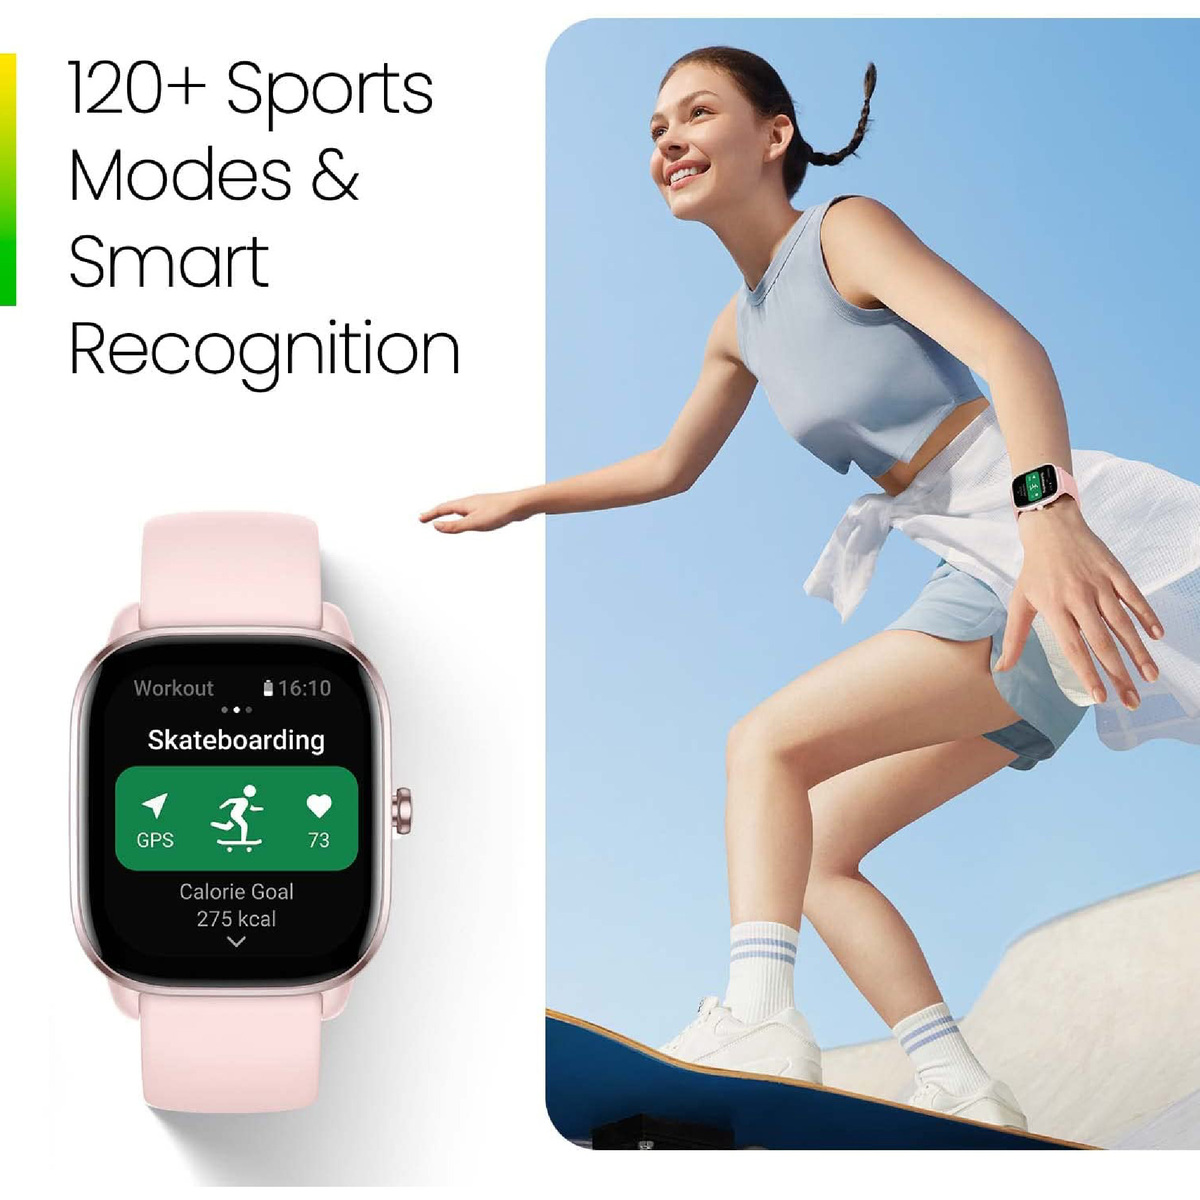 أمازفيت جي تي اس 4 ميني ساعة ذكية للنساء والرجال، أليكسا مدمج، ، GPS ، جهاز تتبع اللياقة البدنية مع 120+ وضع رياضي، بطارية تدوم 15 يومًا، مراقب الأكسجين في الدم معدل ضربات القلب، متوافق هاتف أندرويد مع آيفون - وردي